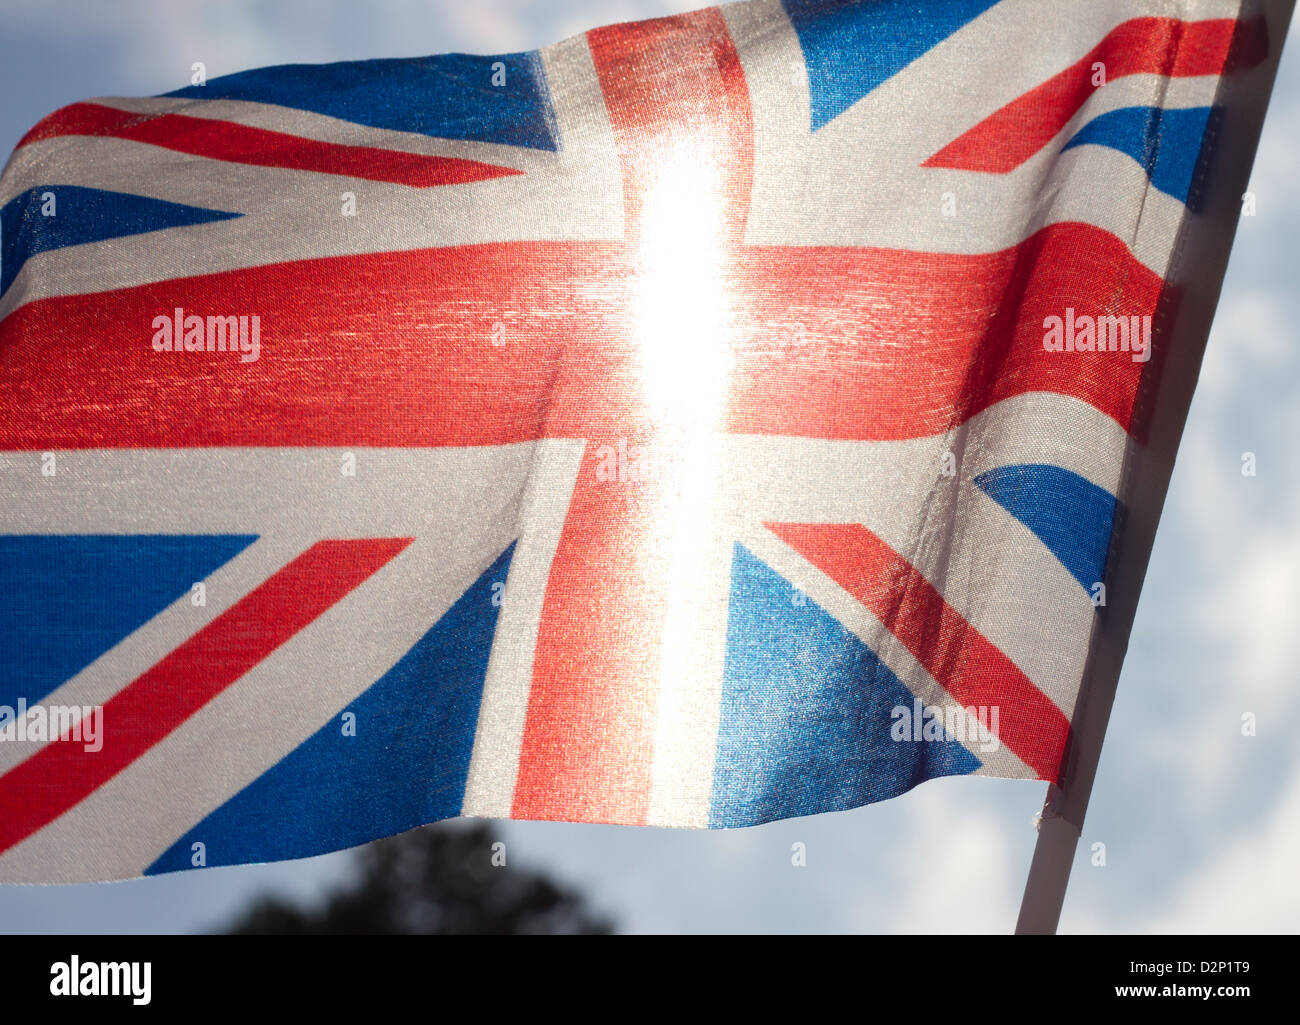 Union jack flag Stock Photo - Alamy